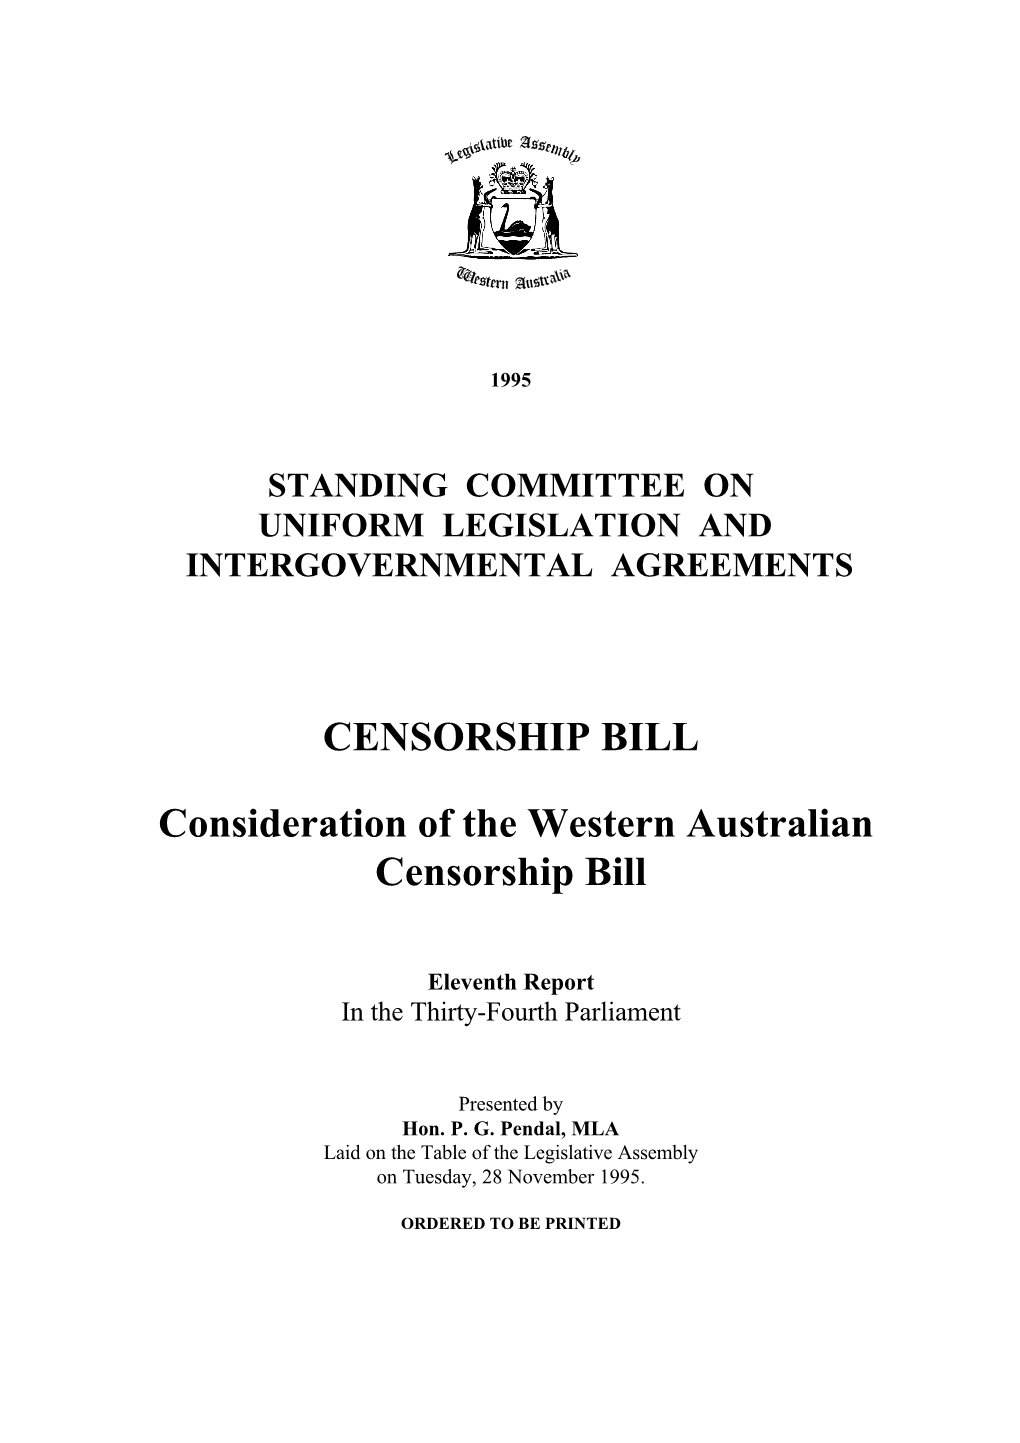 Censorship Bill